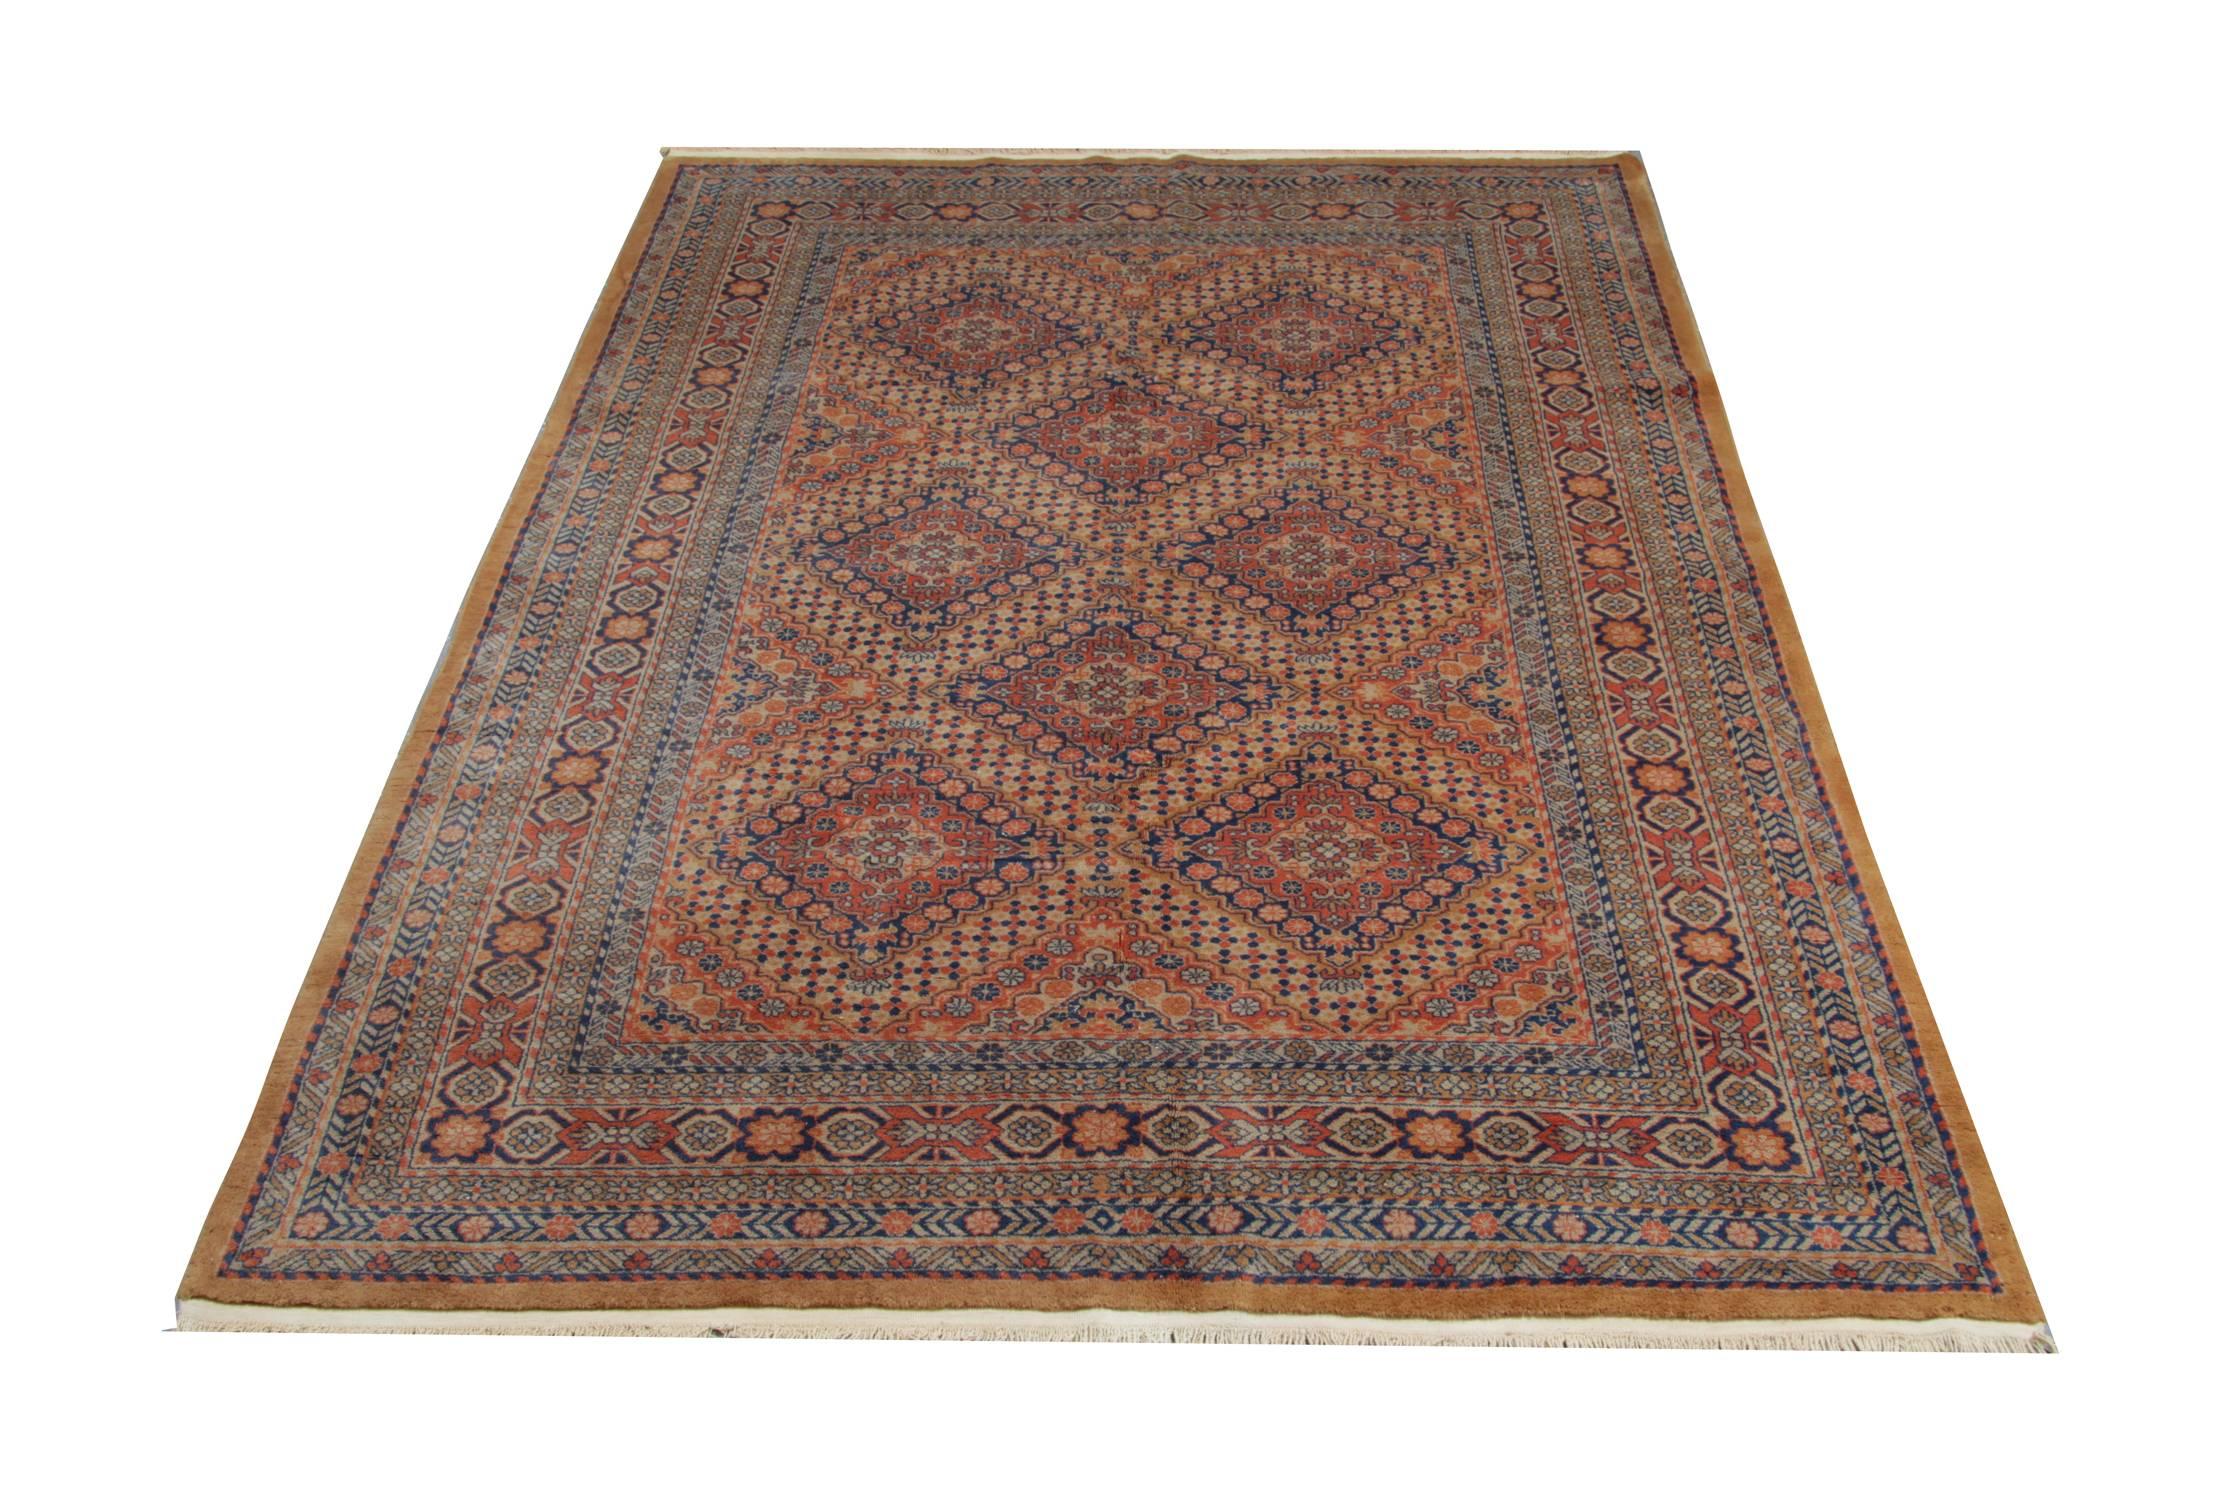 Les tapis indiens anciens sont fabriqués en laine et en coton et pour ces tapis traditionnels, on utilise uniquement des teintures 100% naturelles. Ce tapis géométrique est en excellent état. Le tapis gris est aussi un tapis vintage. Le tapis tissé